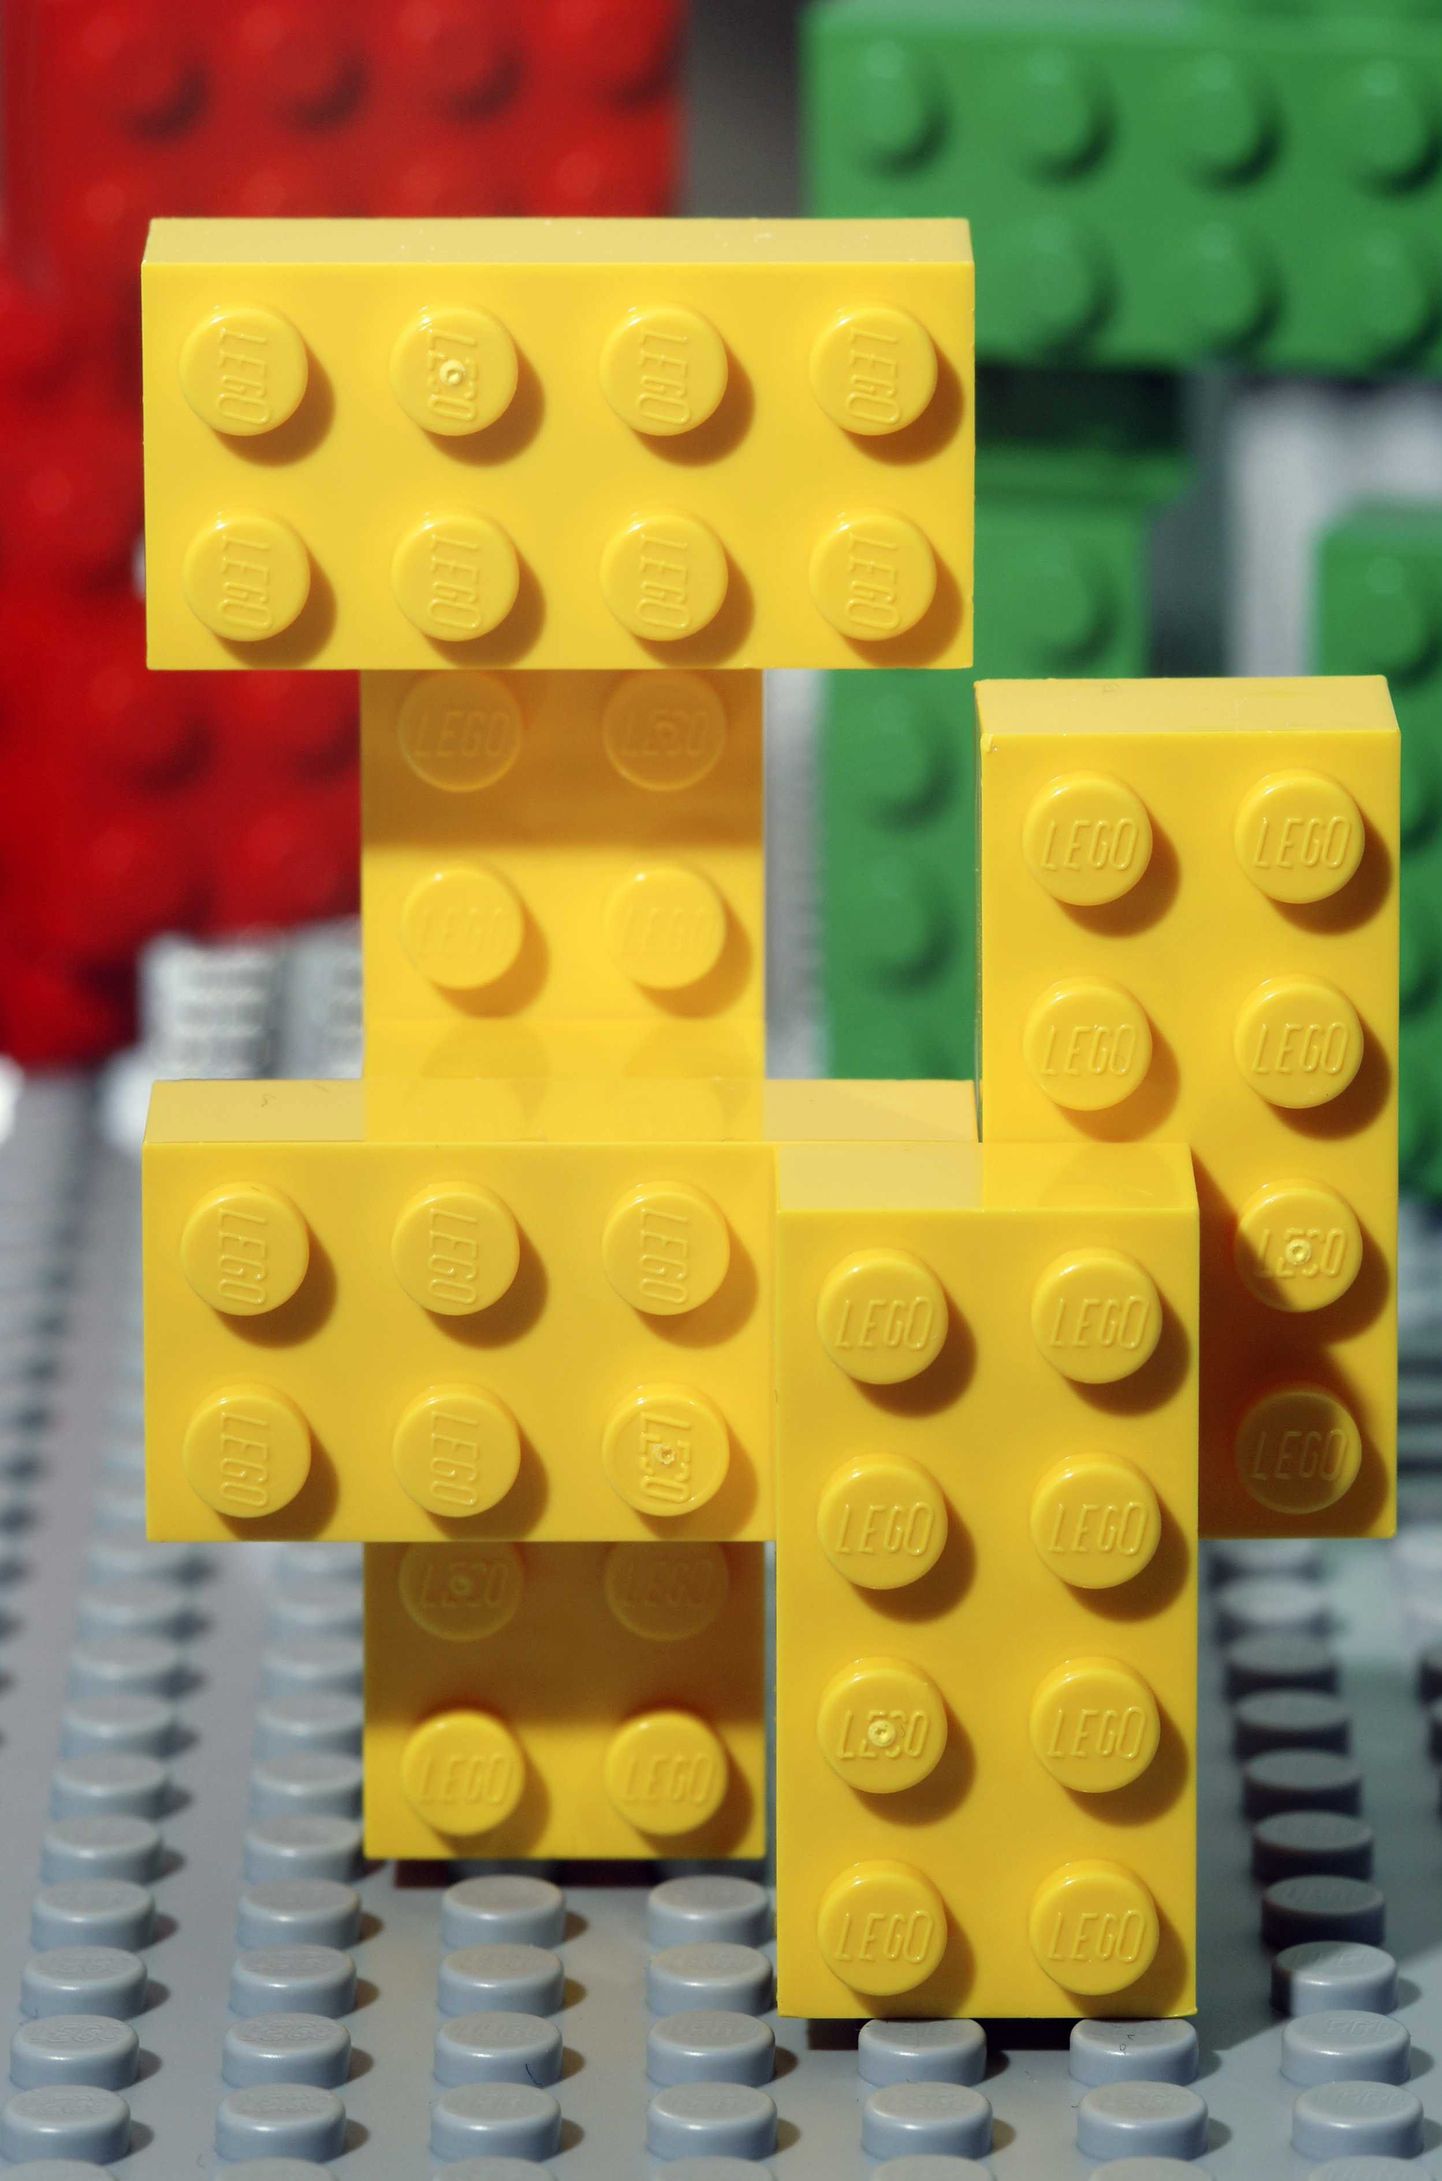 Кубики Lego.